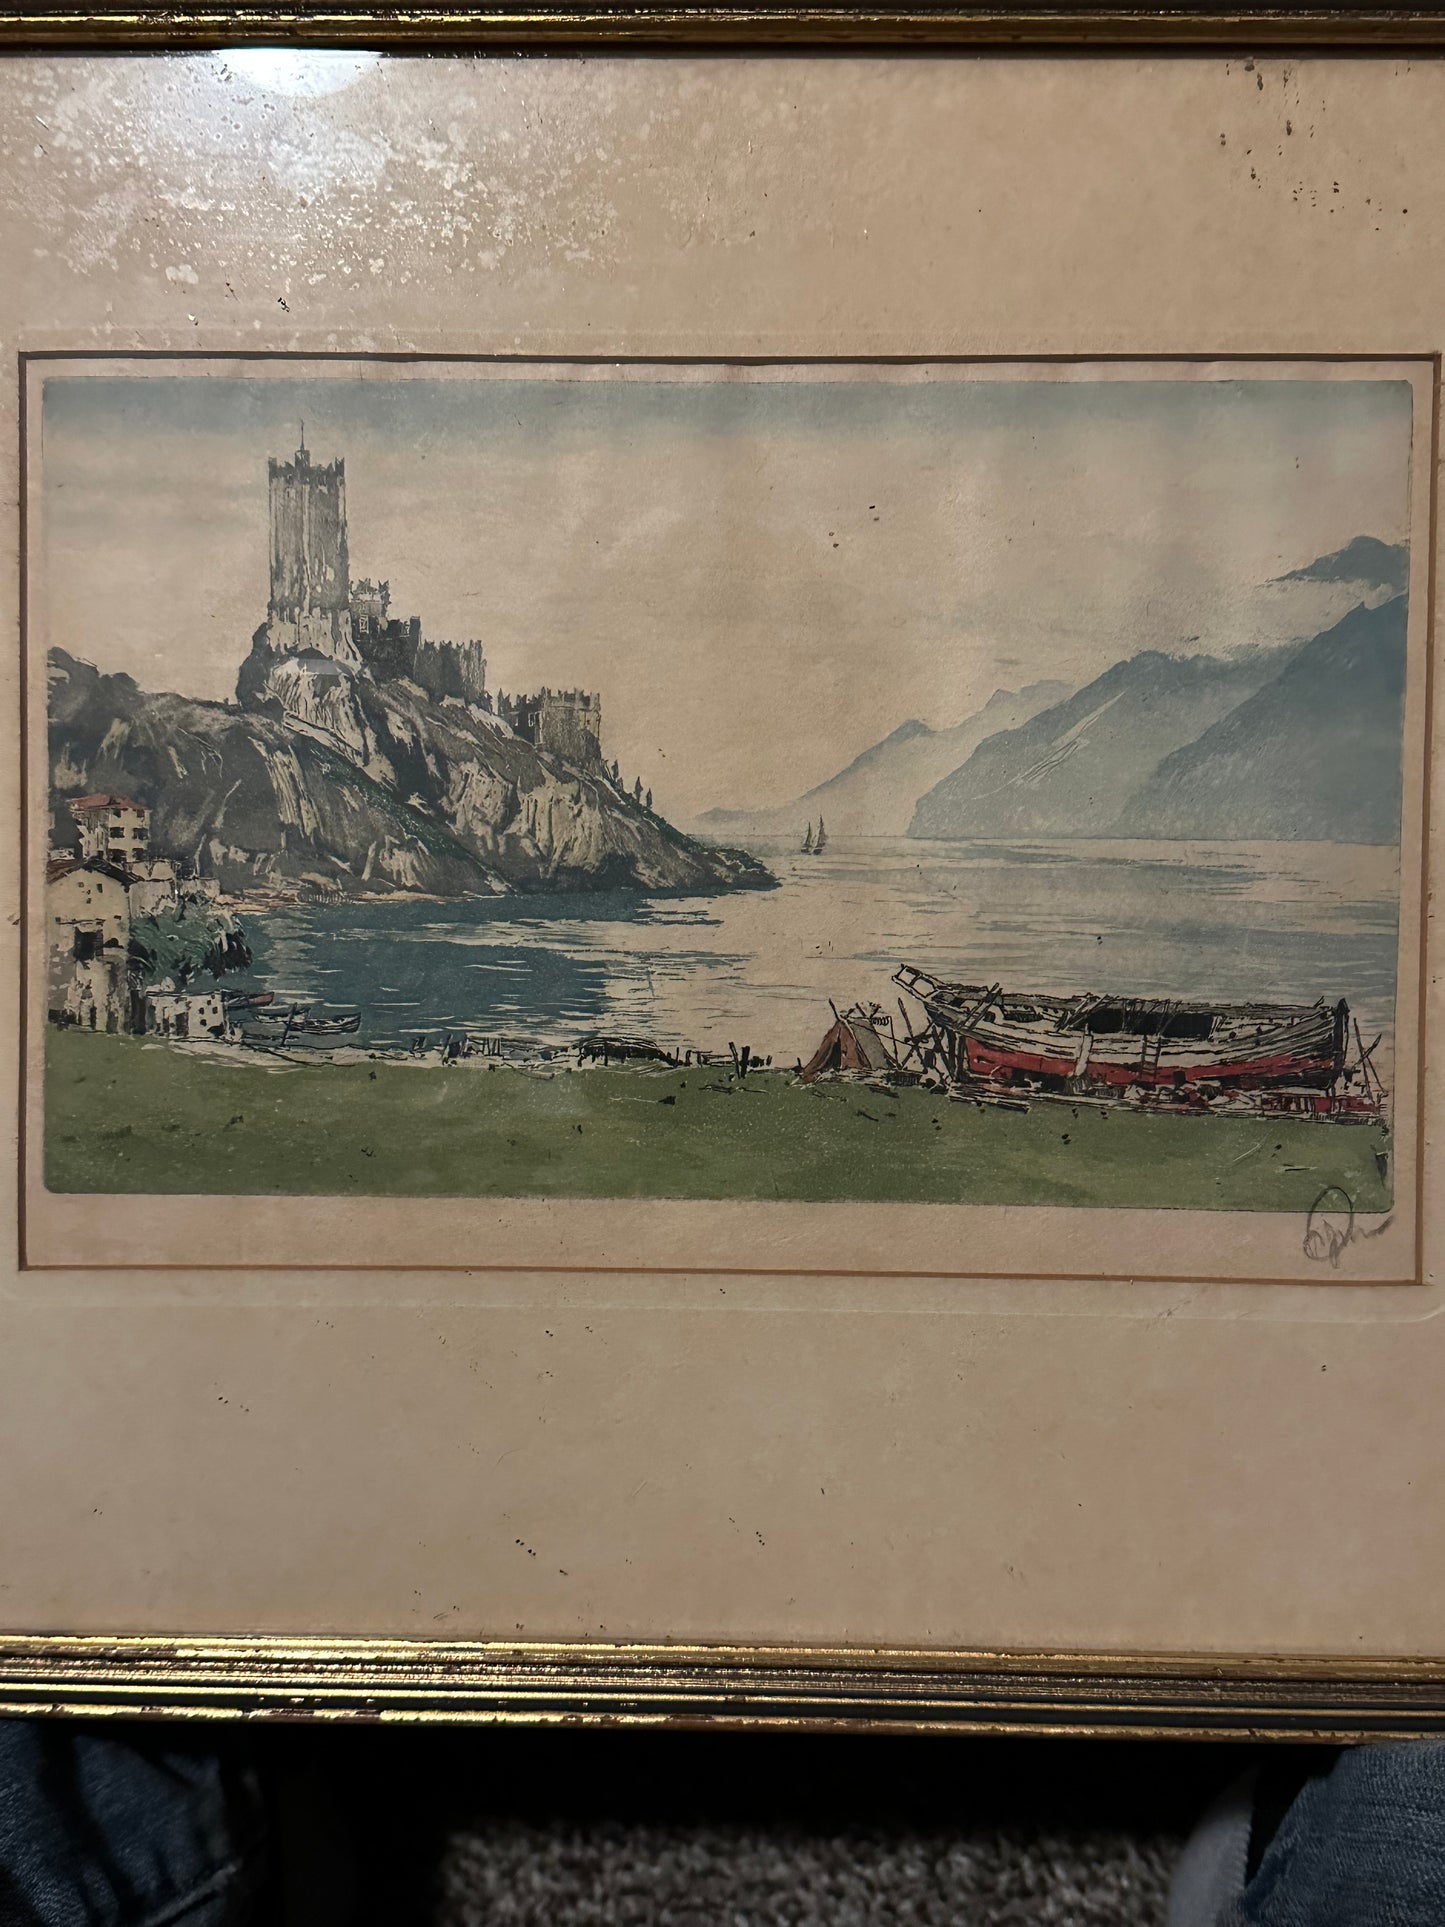 Italy: Malcesine, Lake Garda / circa 1930